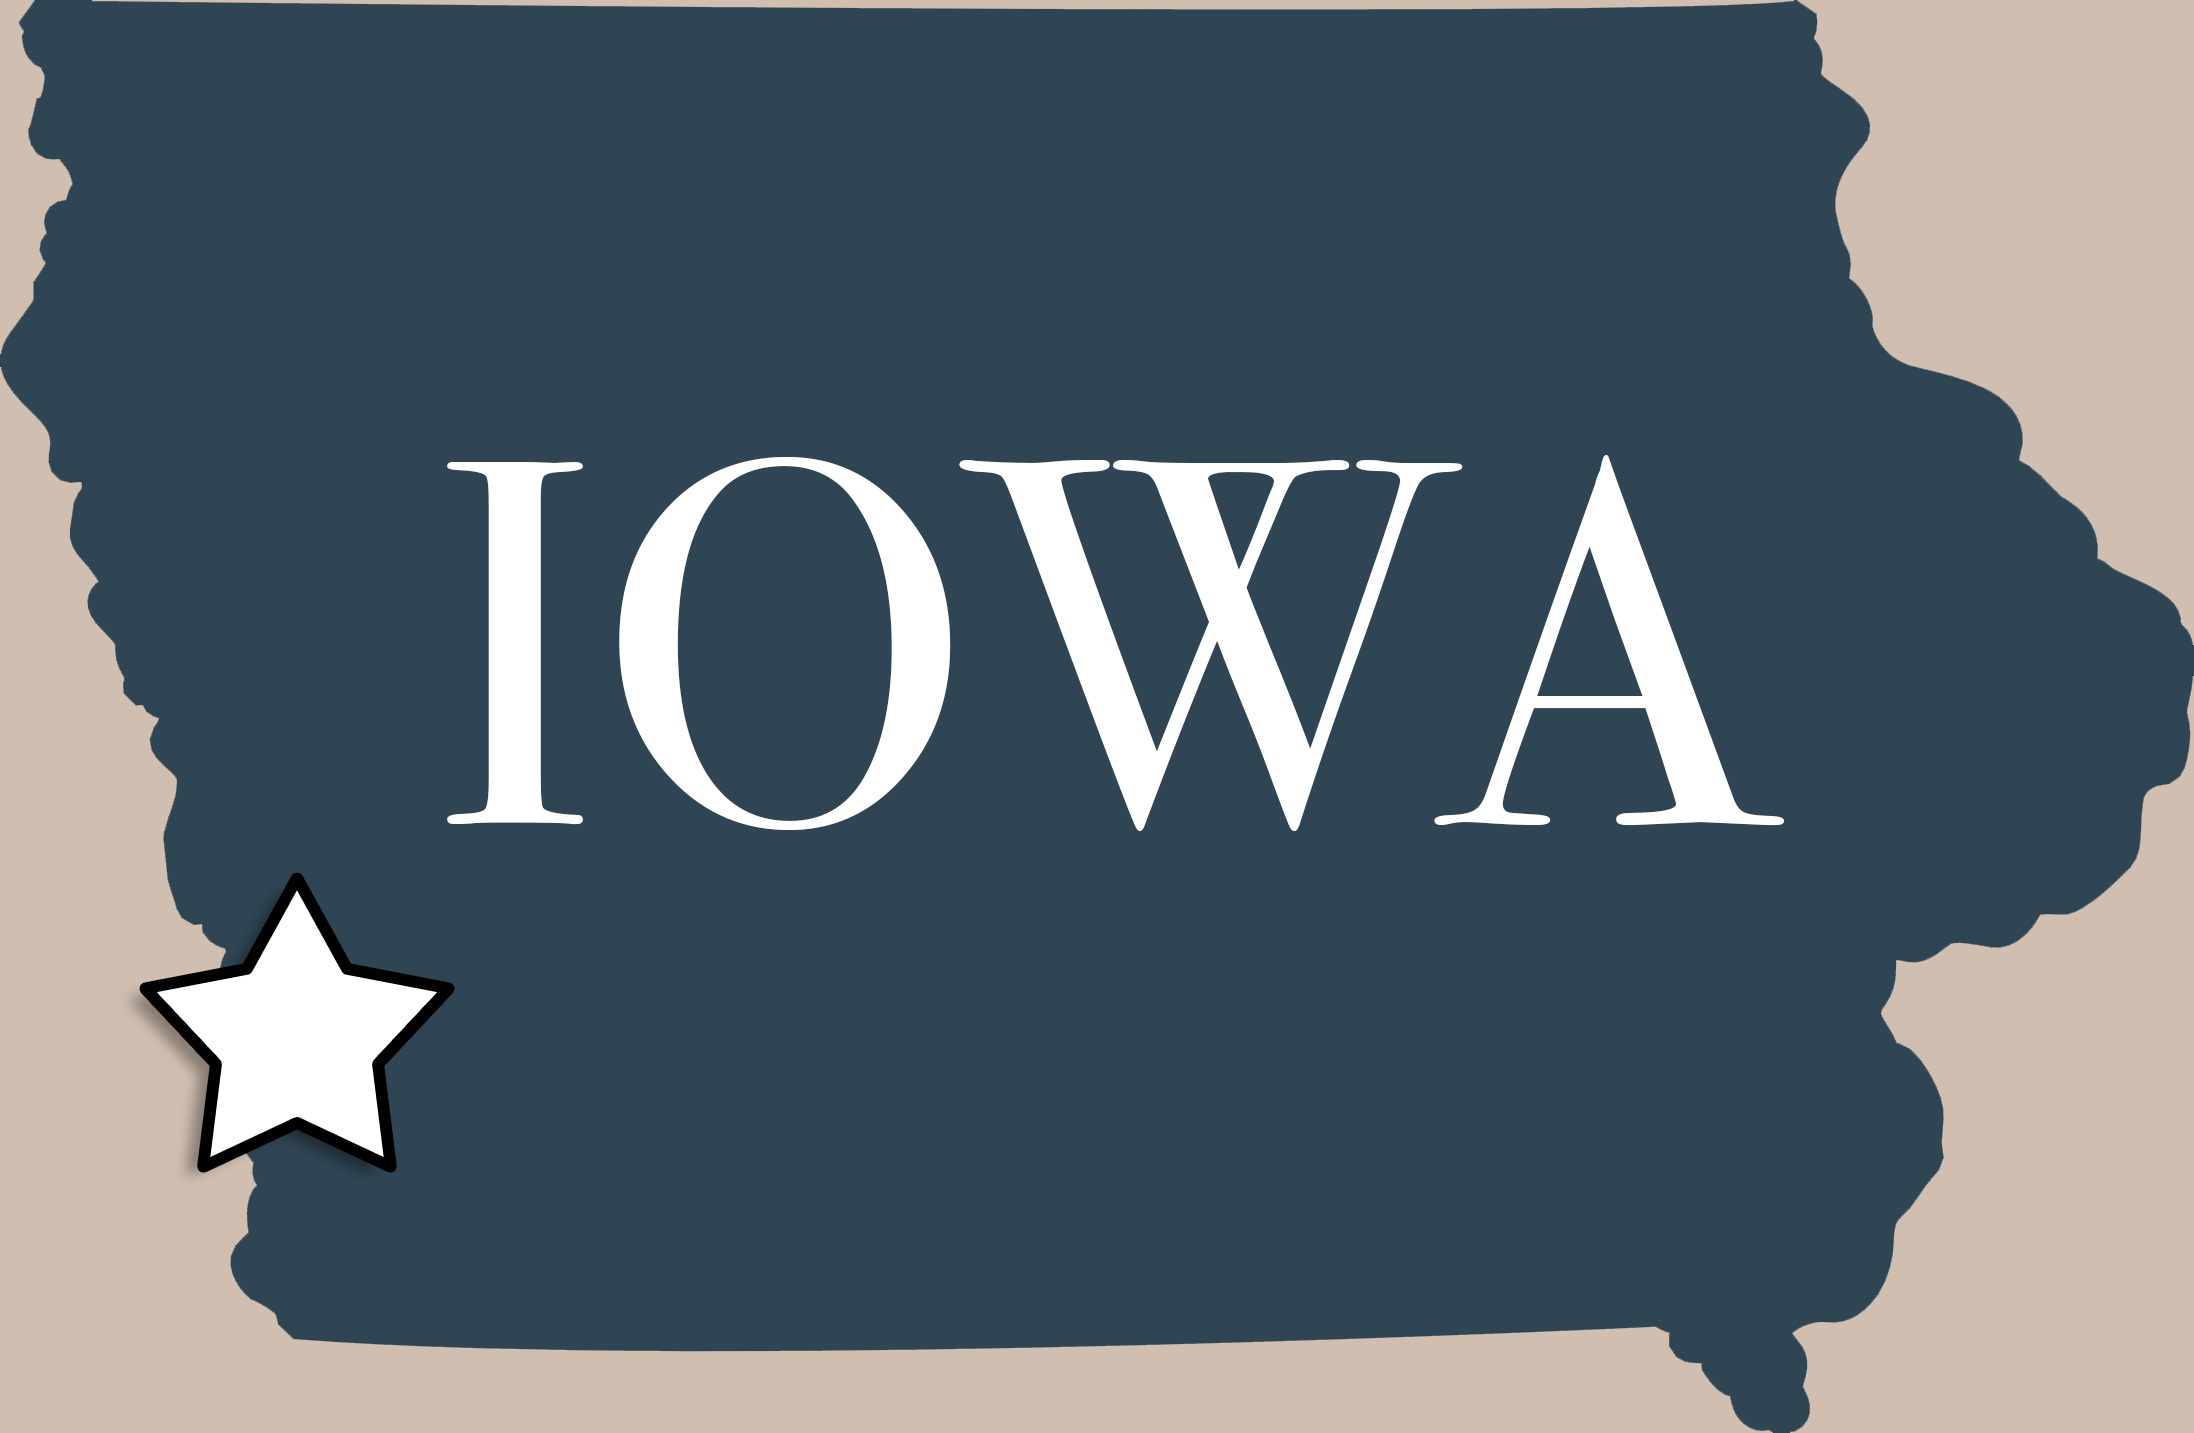 Iowa Map with Star on Pottawattamie County